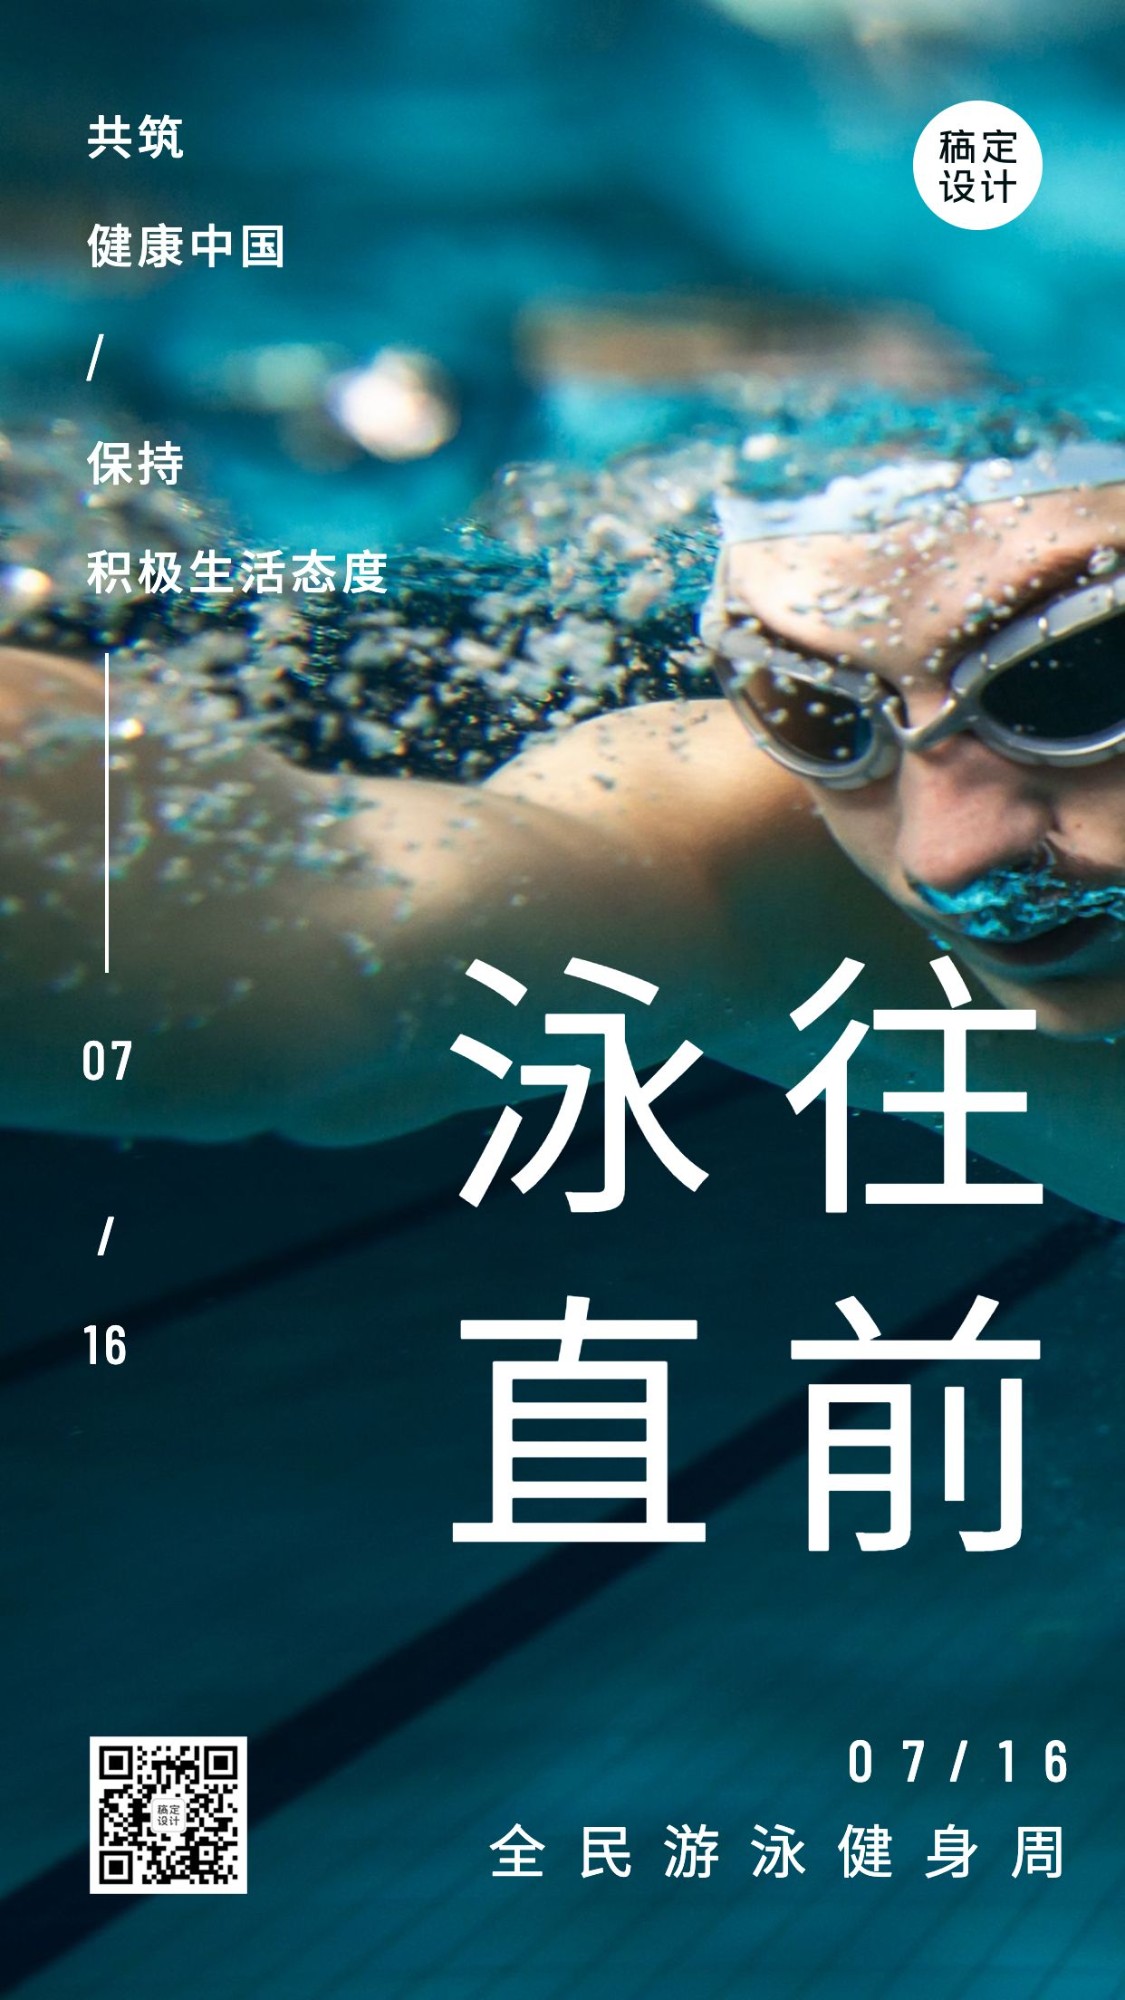 全国游泳日节日祝福实景手机海报预览效果